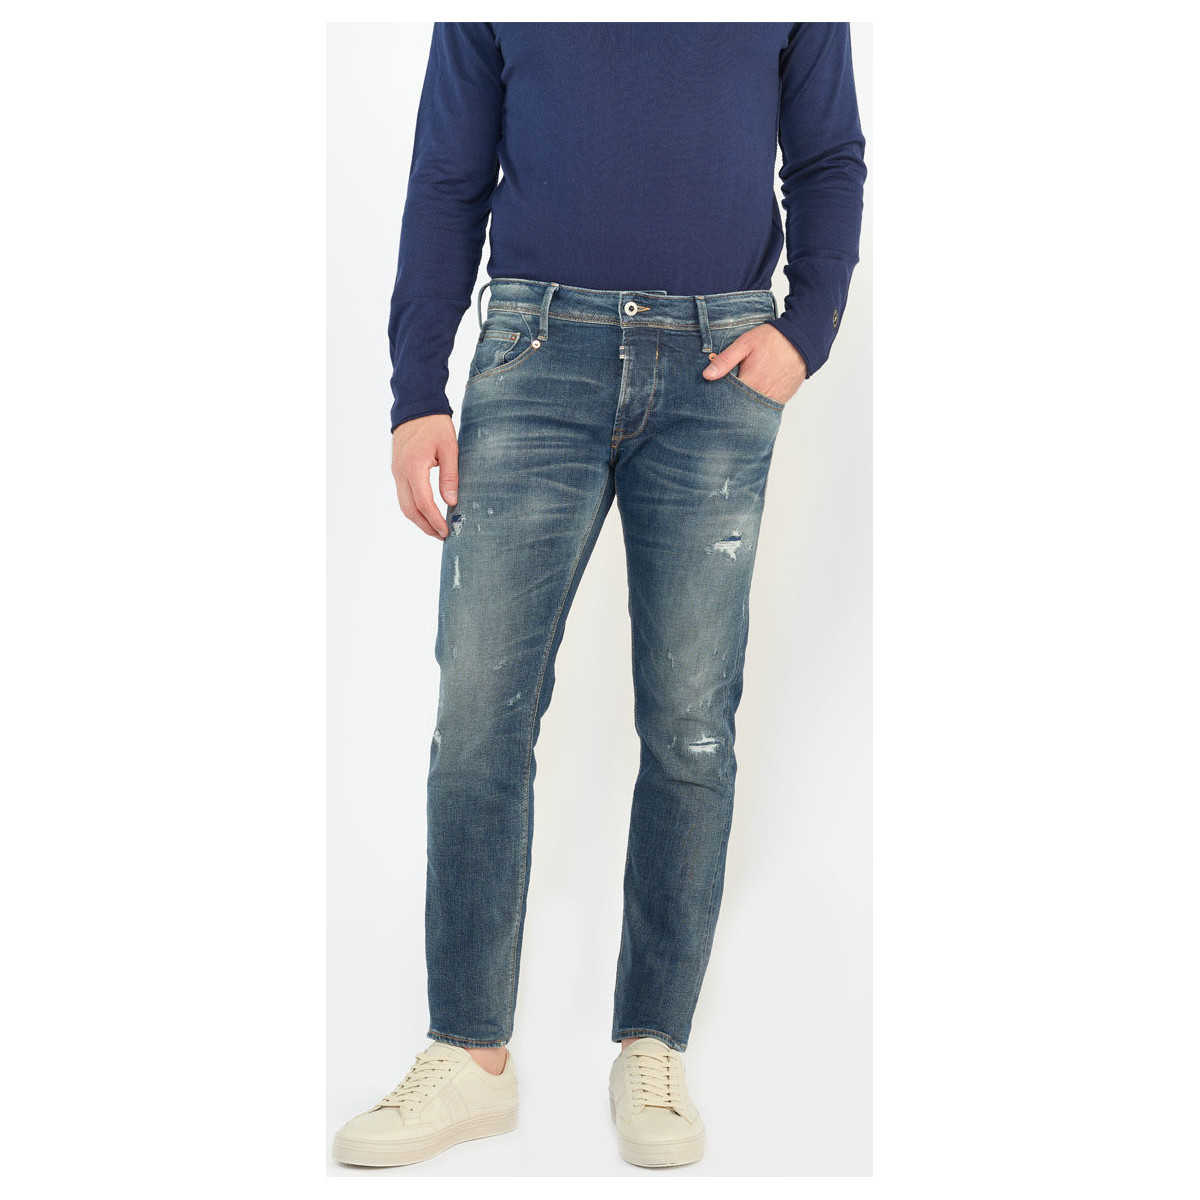 Le Temps des Cerises Bleu Niko 700/11 adjusted jeans de